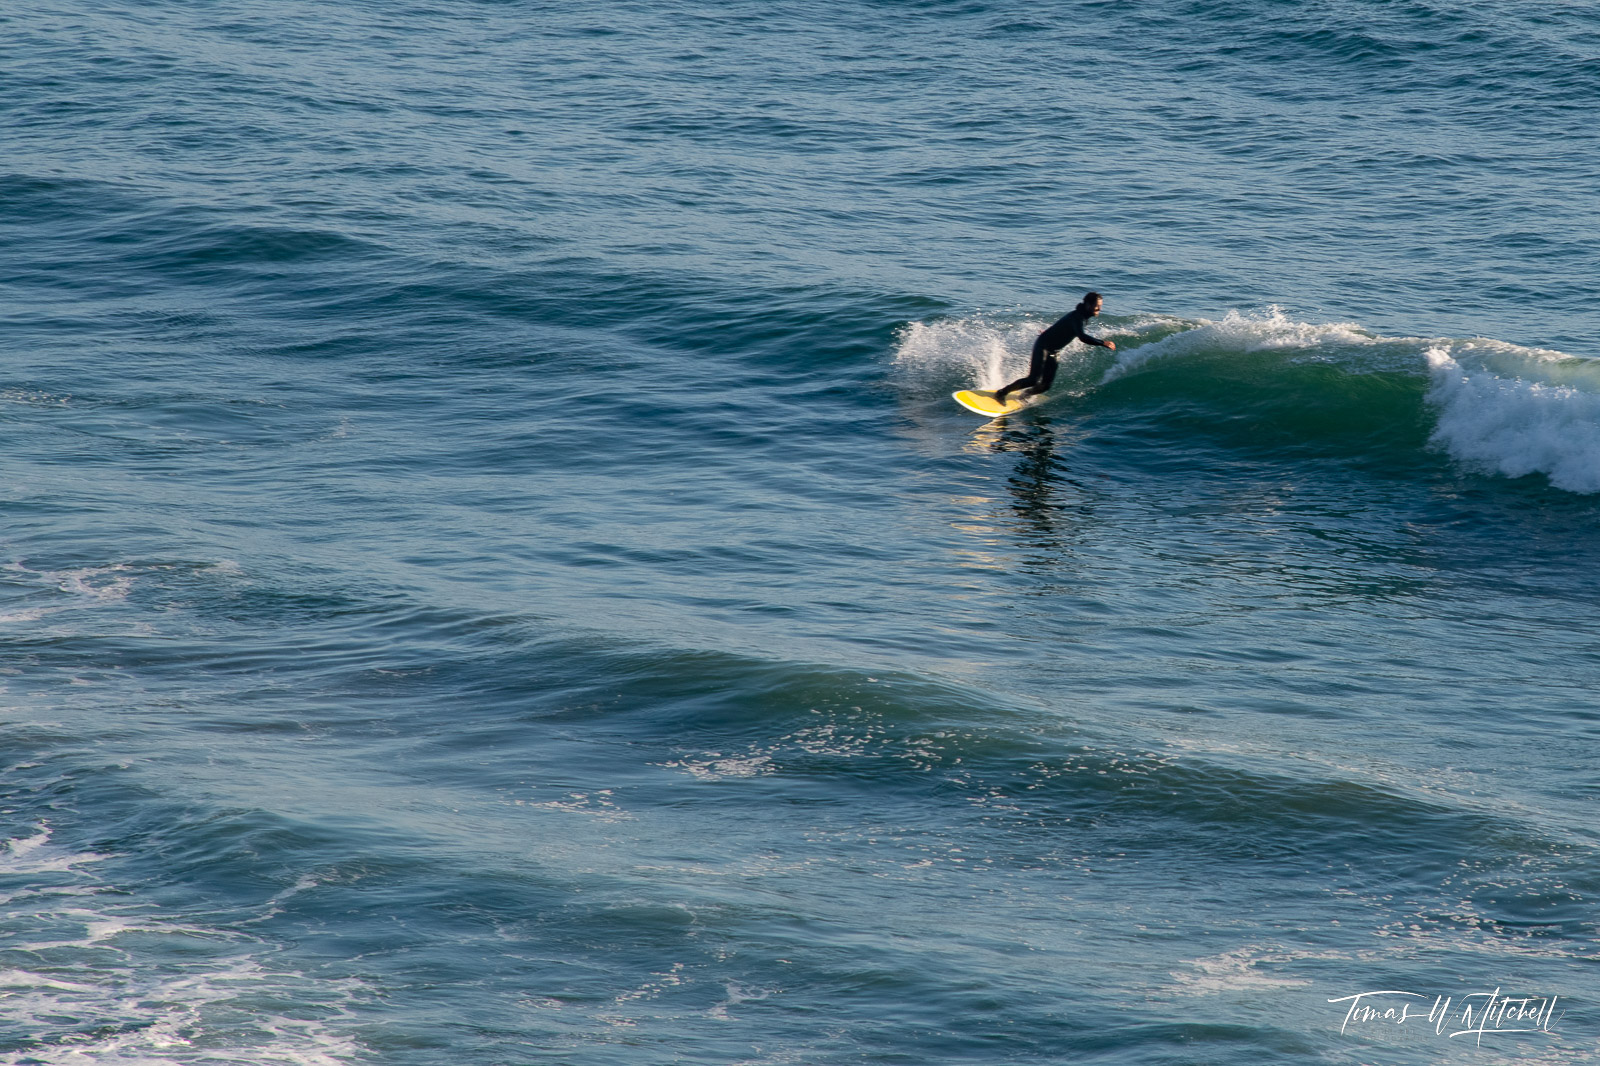 surfer carving wave